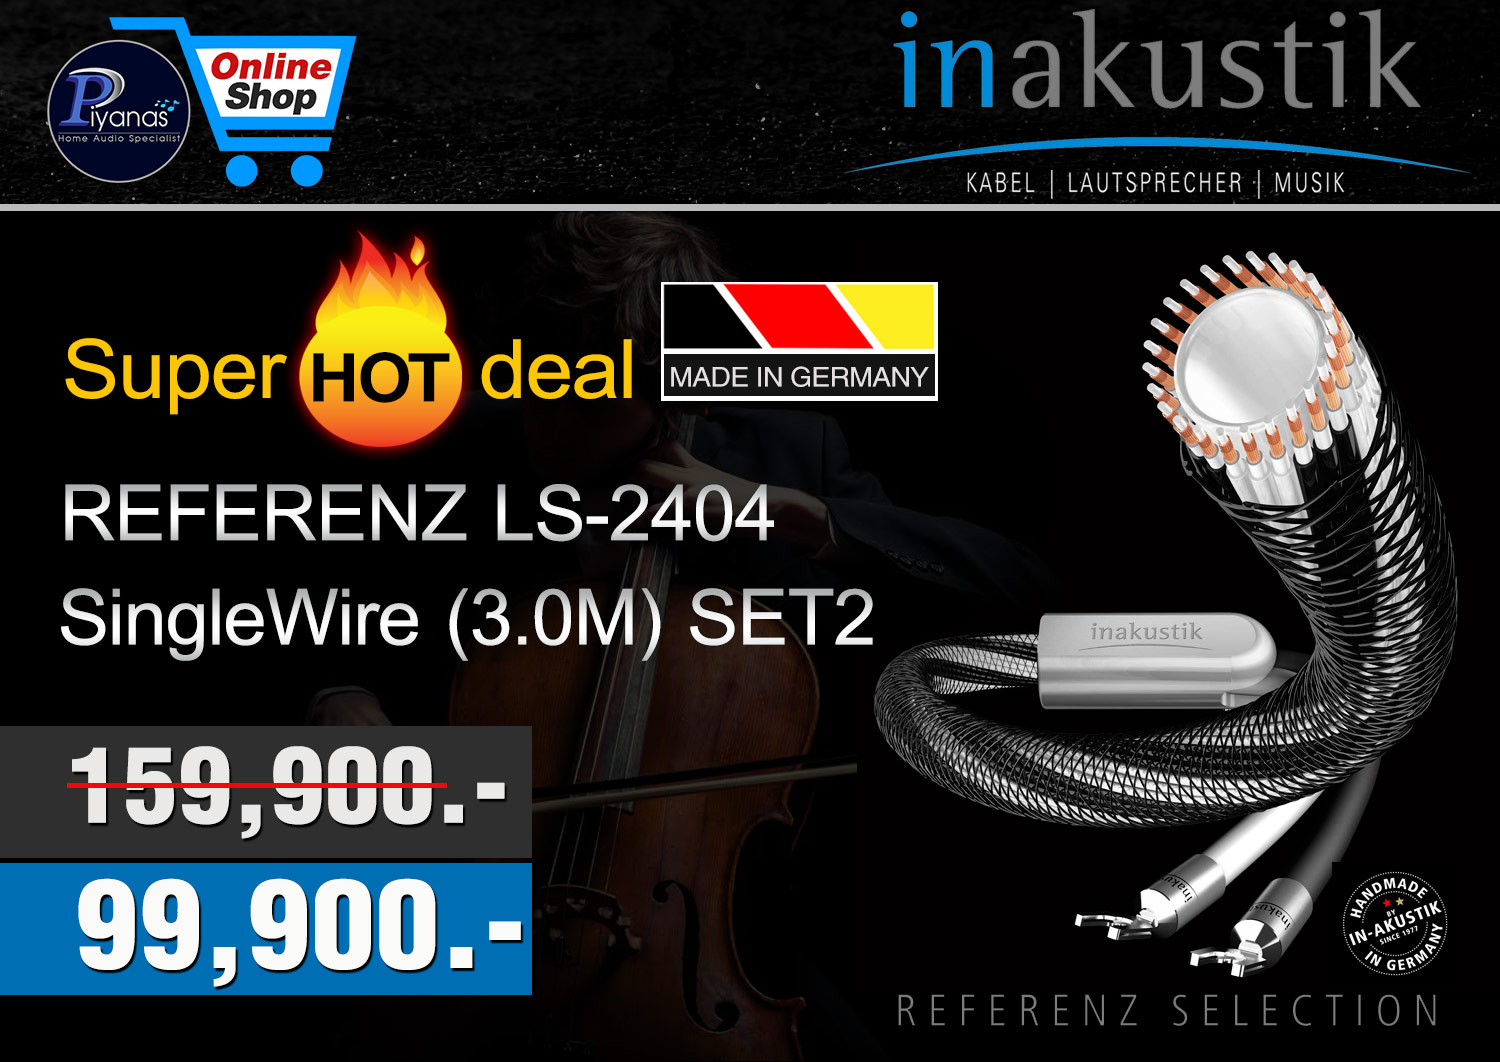 REFERENZ LS-2404
SingleWire (3.0M) SET2